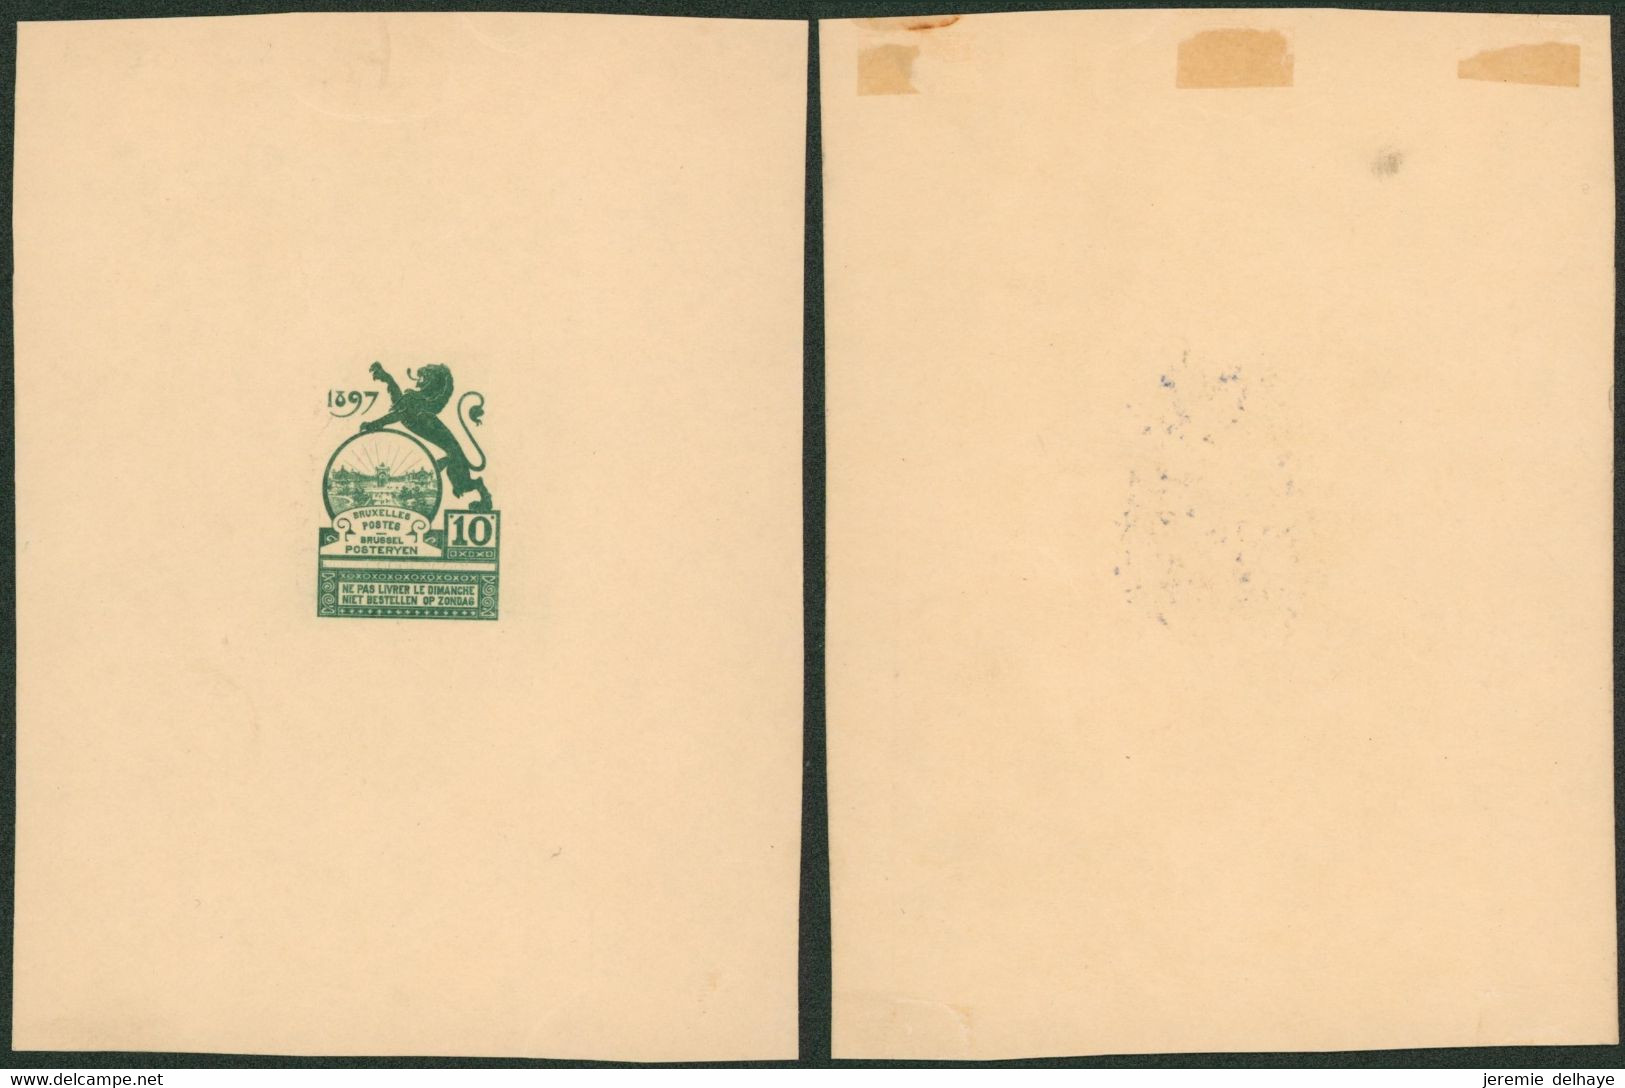 Essai - Proposition Du Peintre Louis Titz (Bruxelles Expositions 1897) Sur Papier Carton Crème (1 Couleur) : STES 2221 - Prove E Ristampe